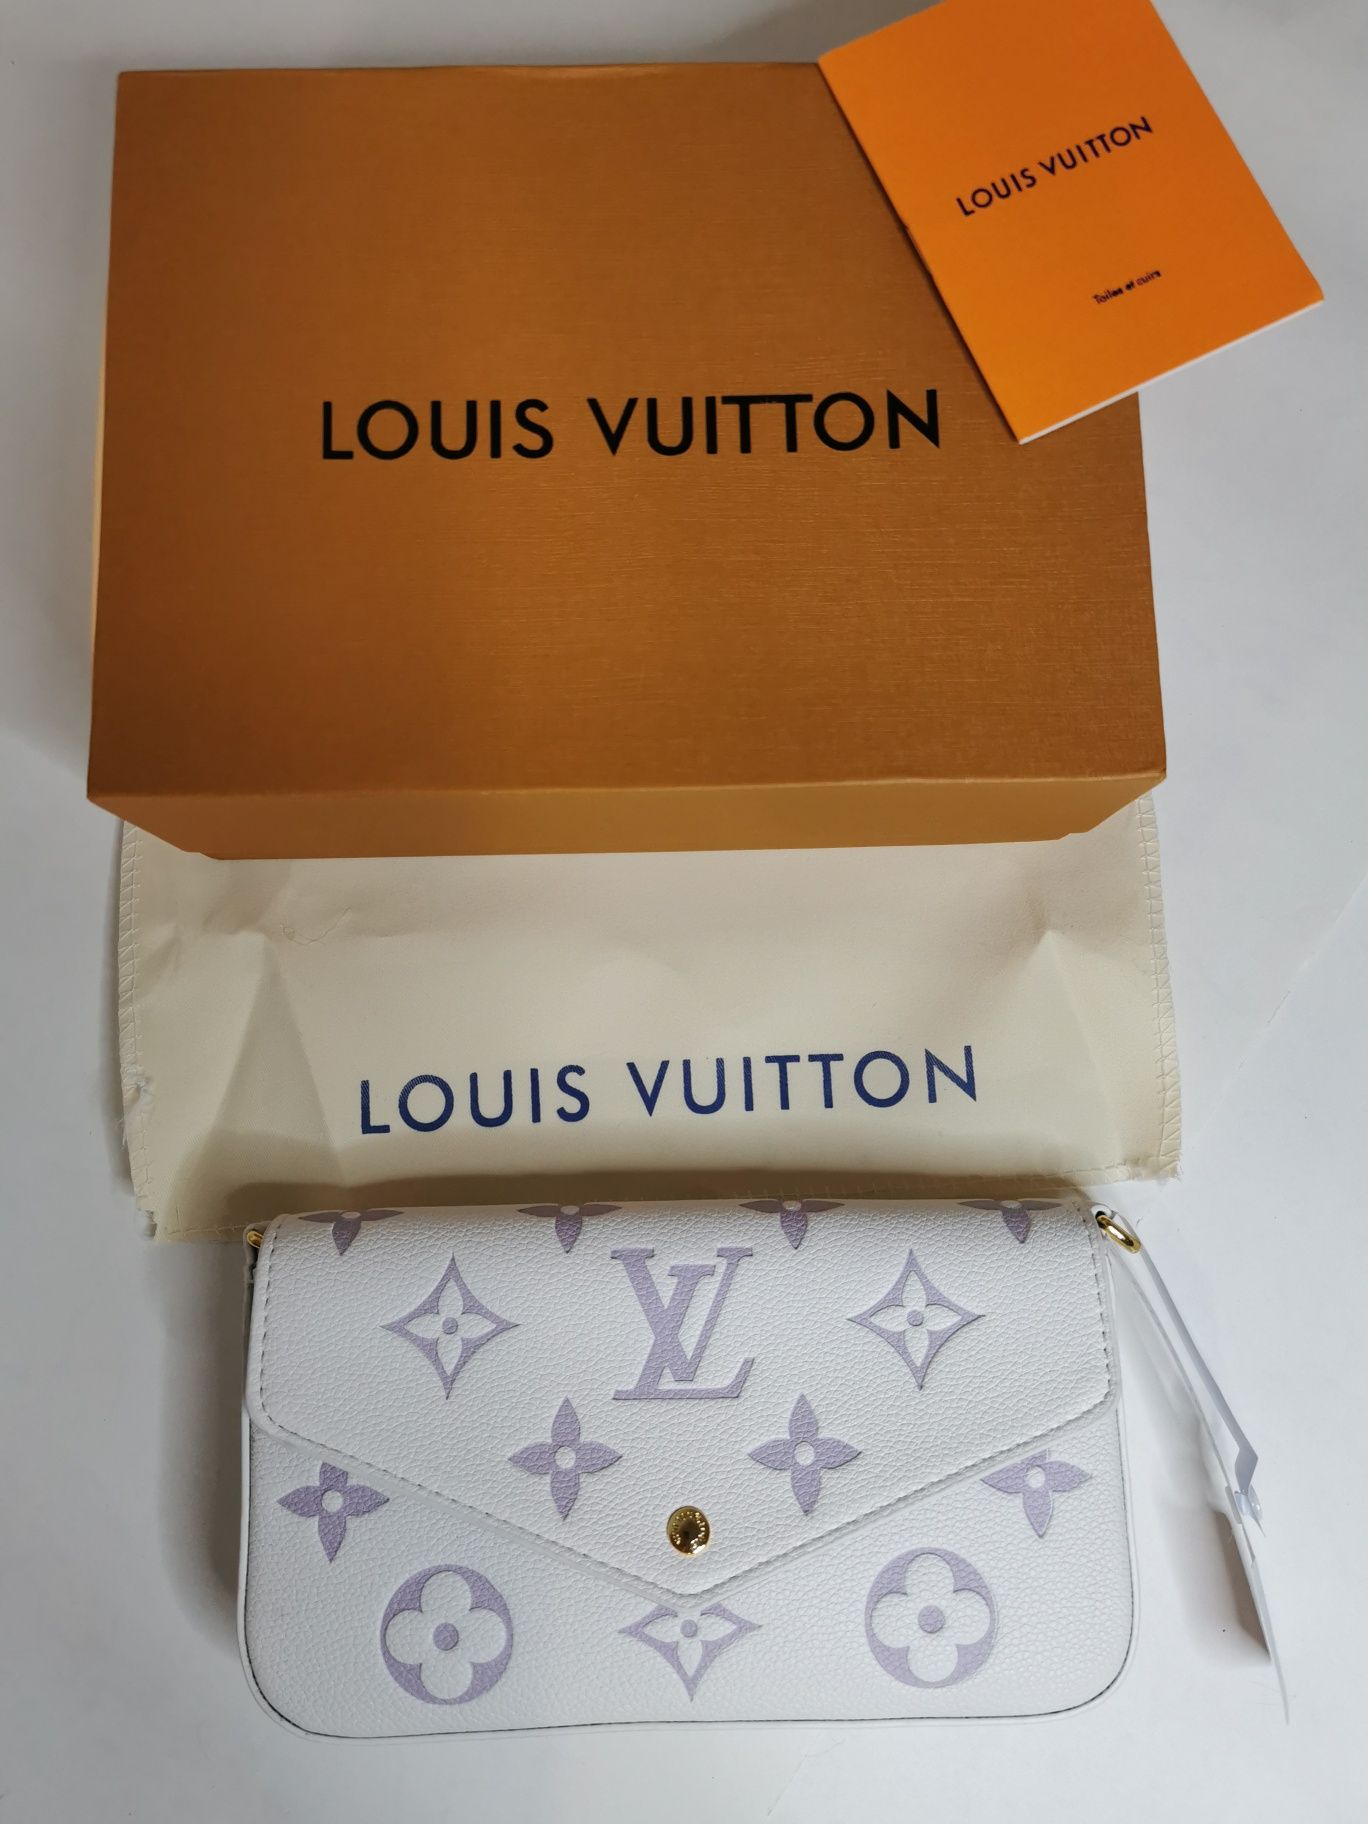 Louis Vuitton geantă pentru femei